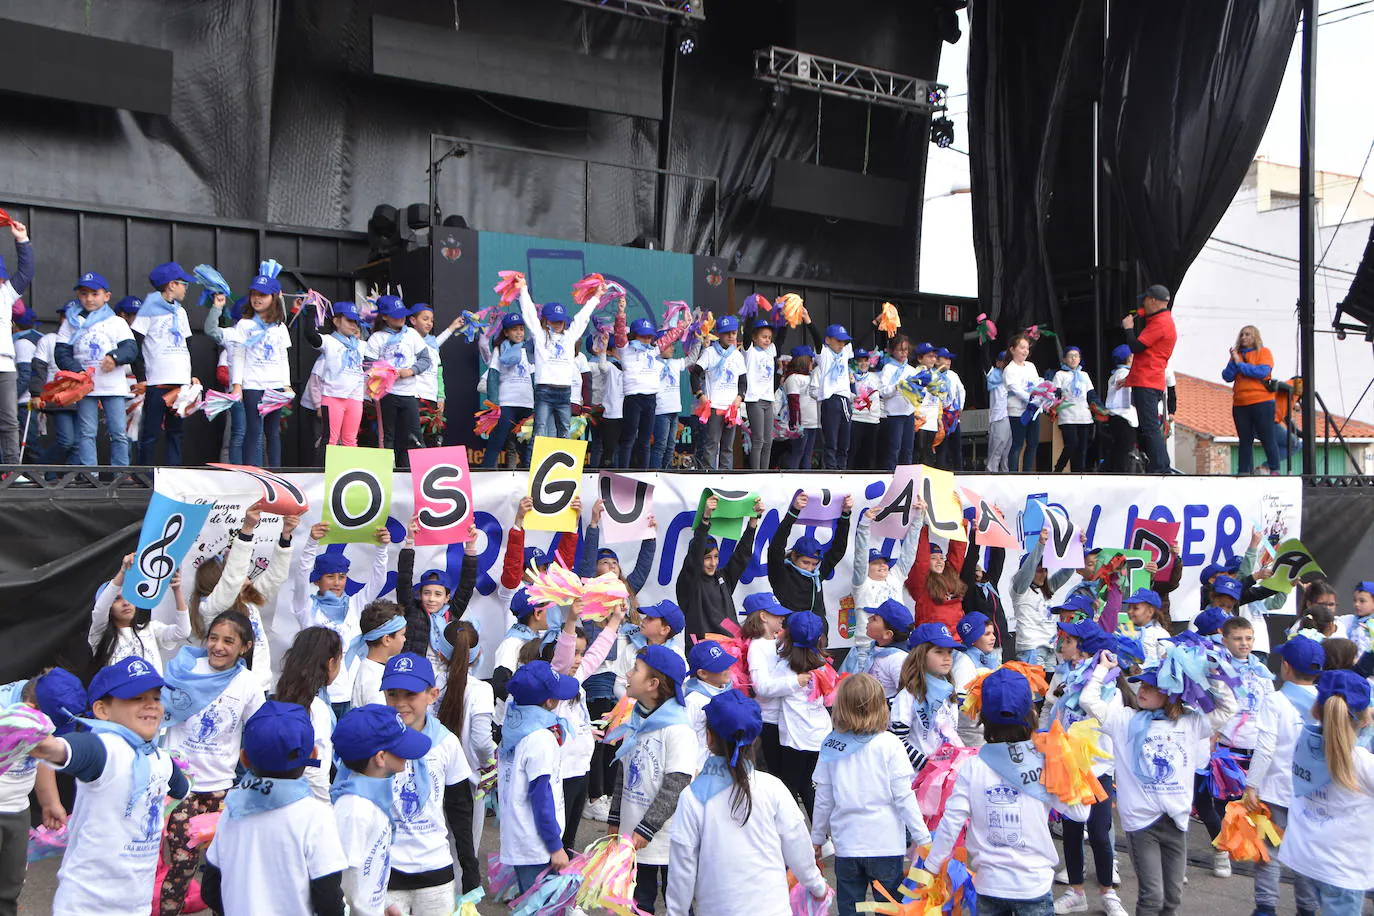 Más de 1.200 niños bailan al son de “El Danzar de los Danzares” en Castellanos